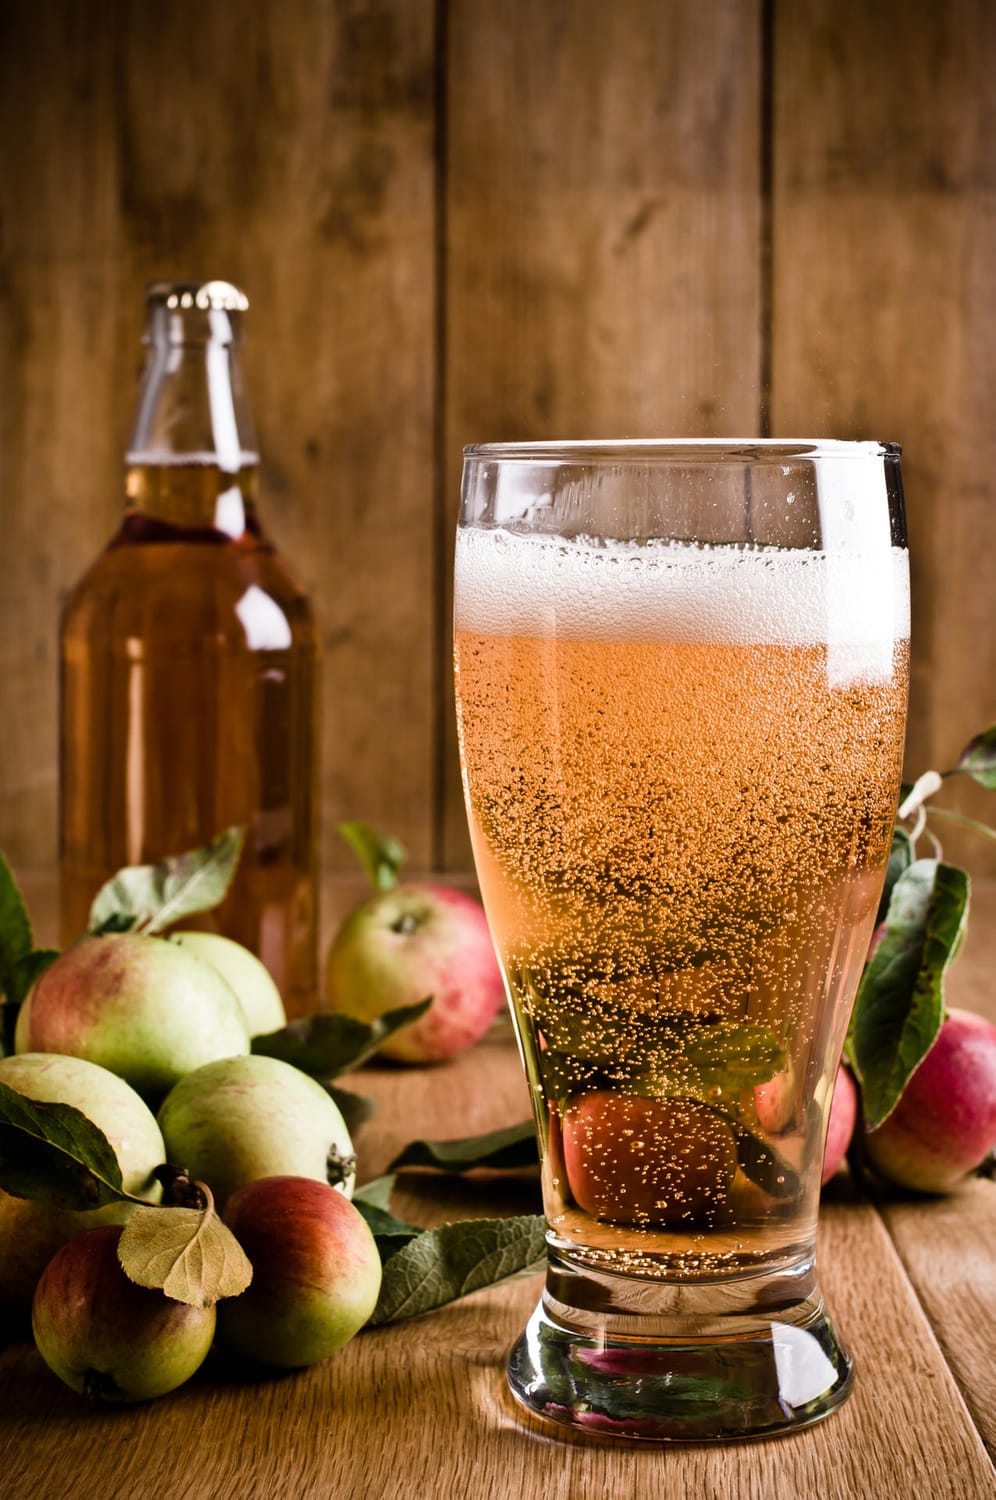 In Großbritannien wird Cider wir Bier aus dem Hahn gezapft und auch die Flaschen ähneln Bierflaschen.